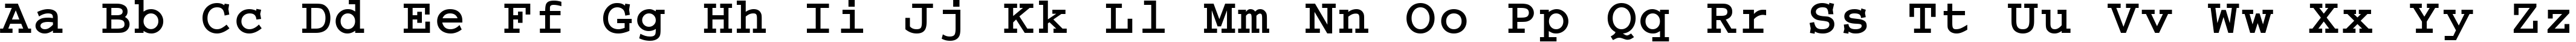 Пример написания английского алфавита шрифтом Cougel Bold:001.001